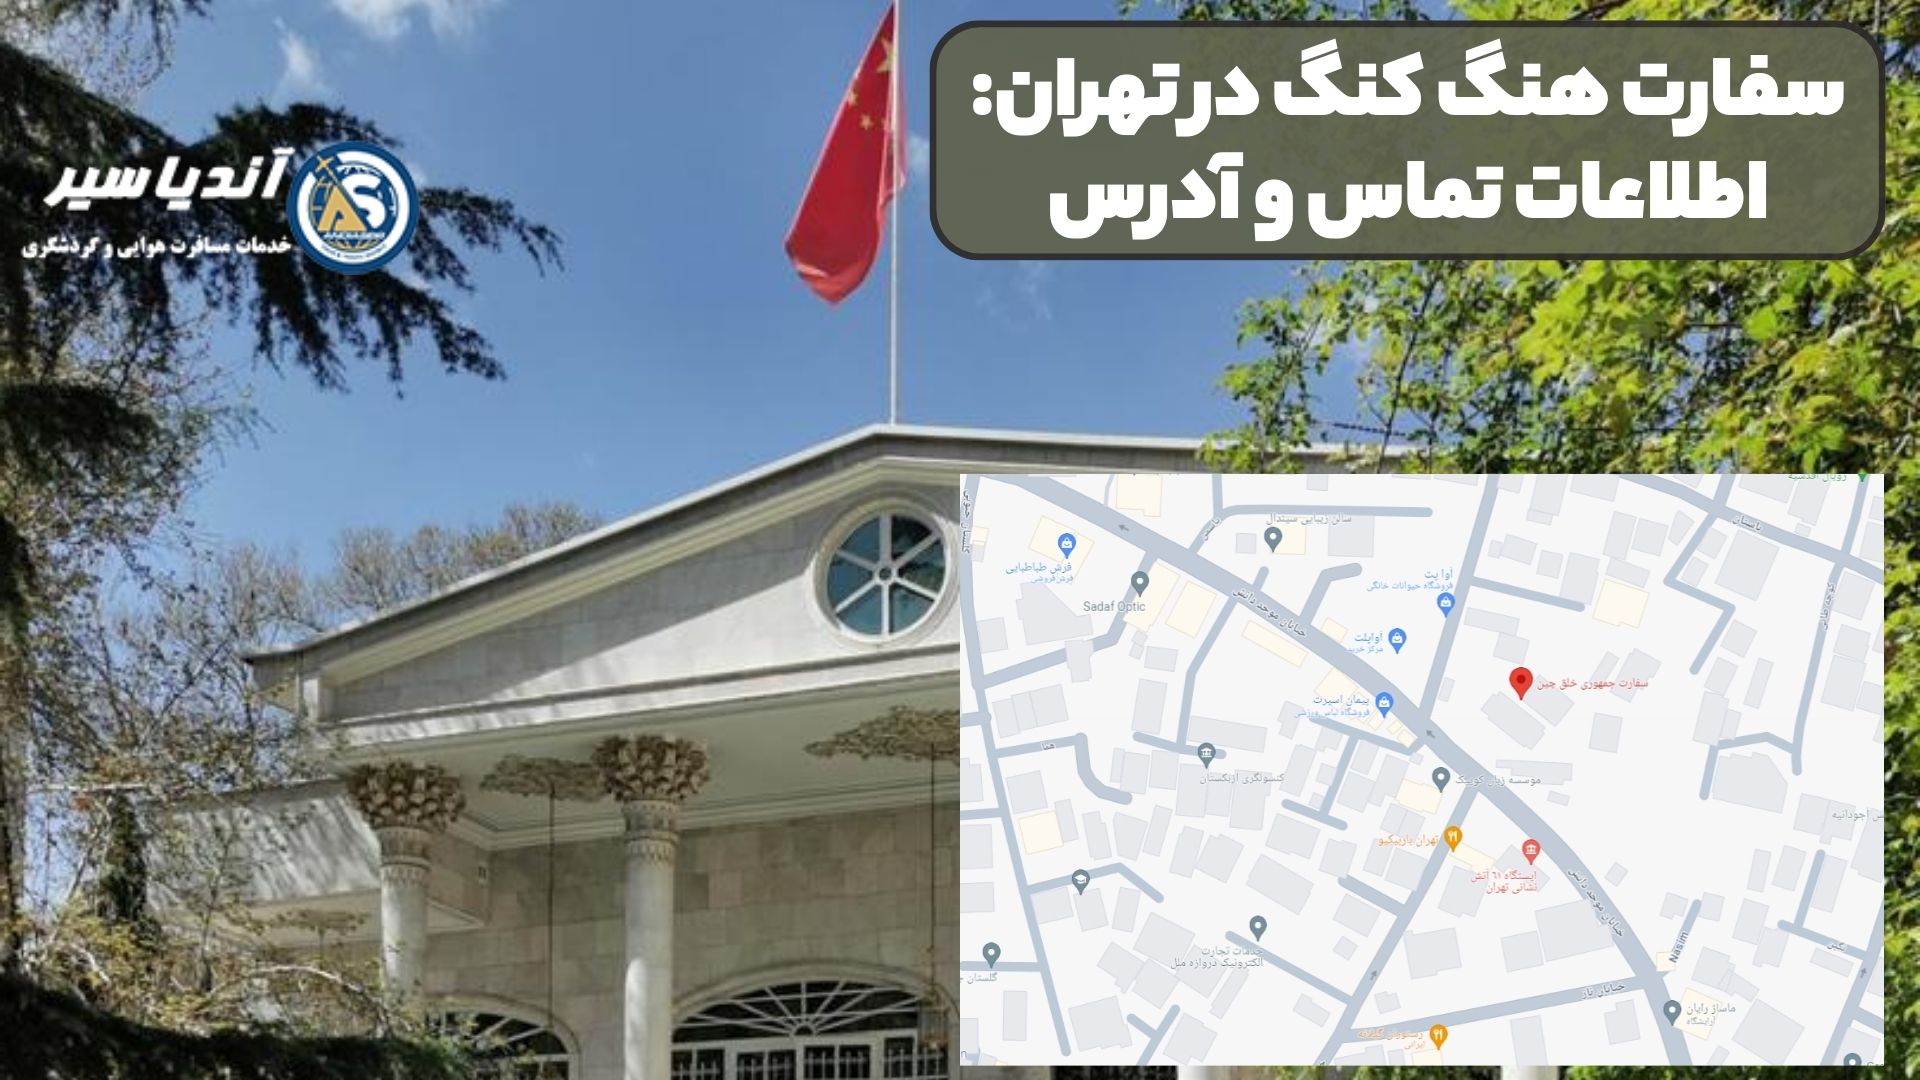 سفارت هنگ کنگ در تهران: اطلاعات تماس و آدرس